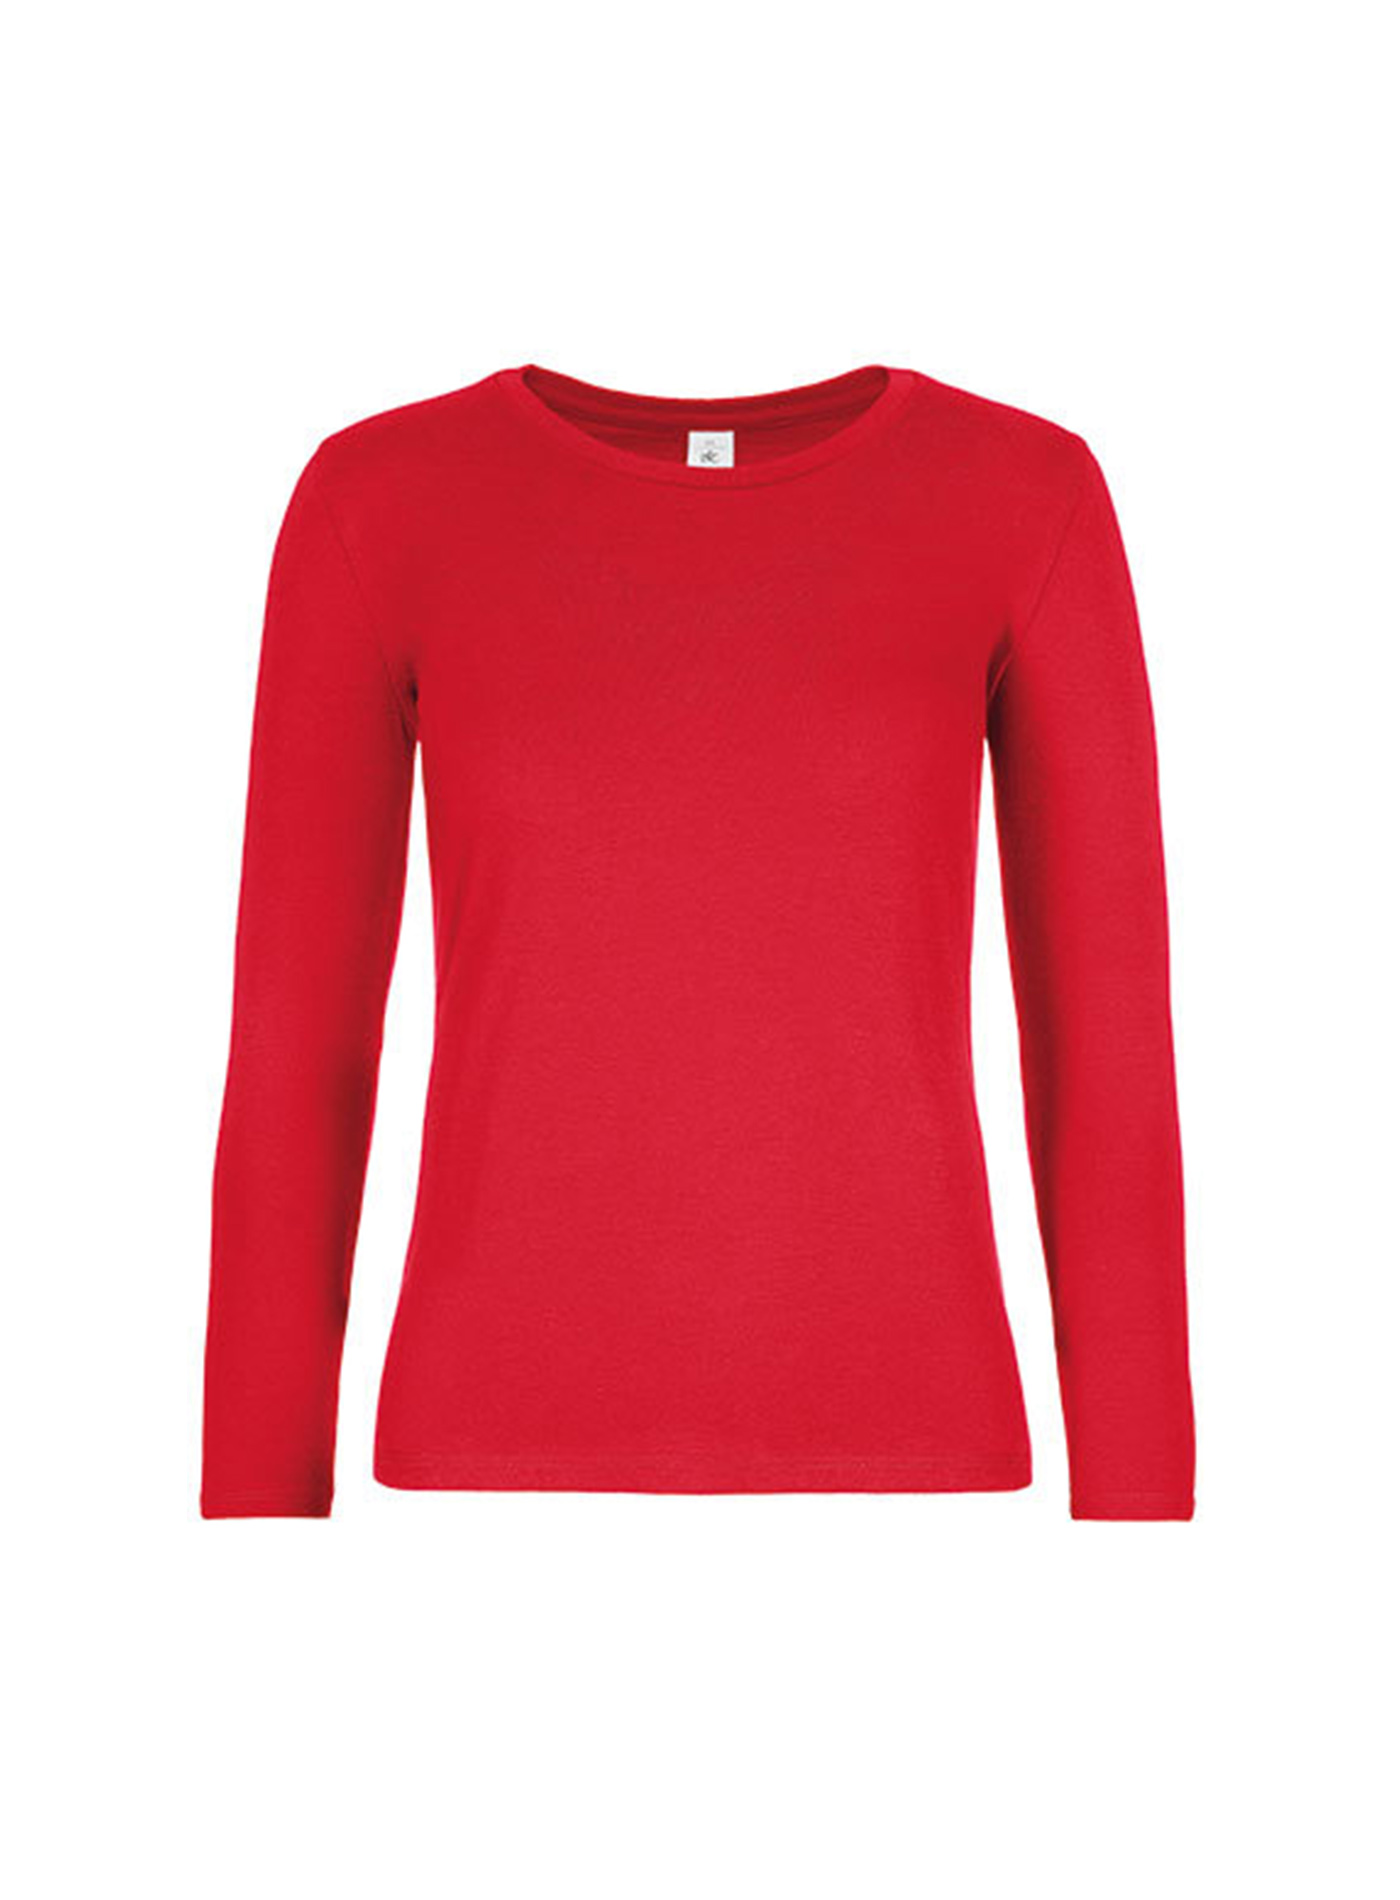 Dámské tričko s dlouhým rukávem B&C Collection - Červená XL